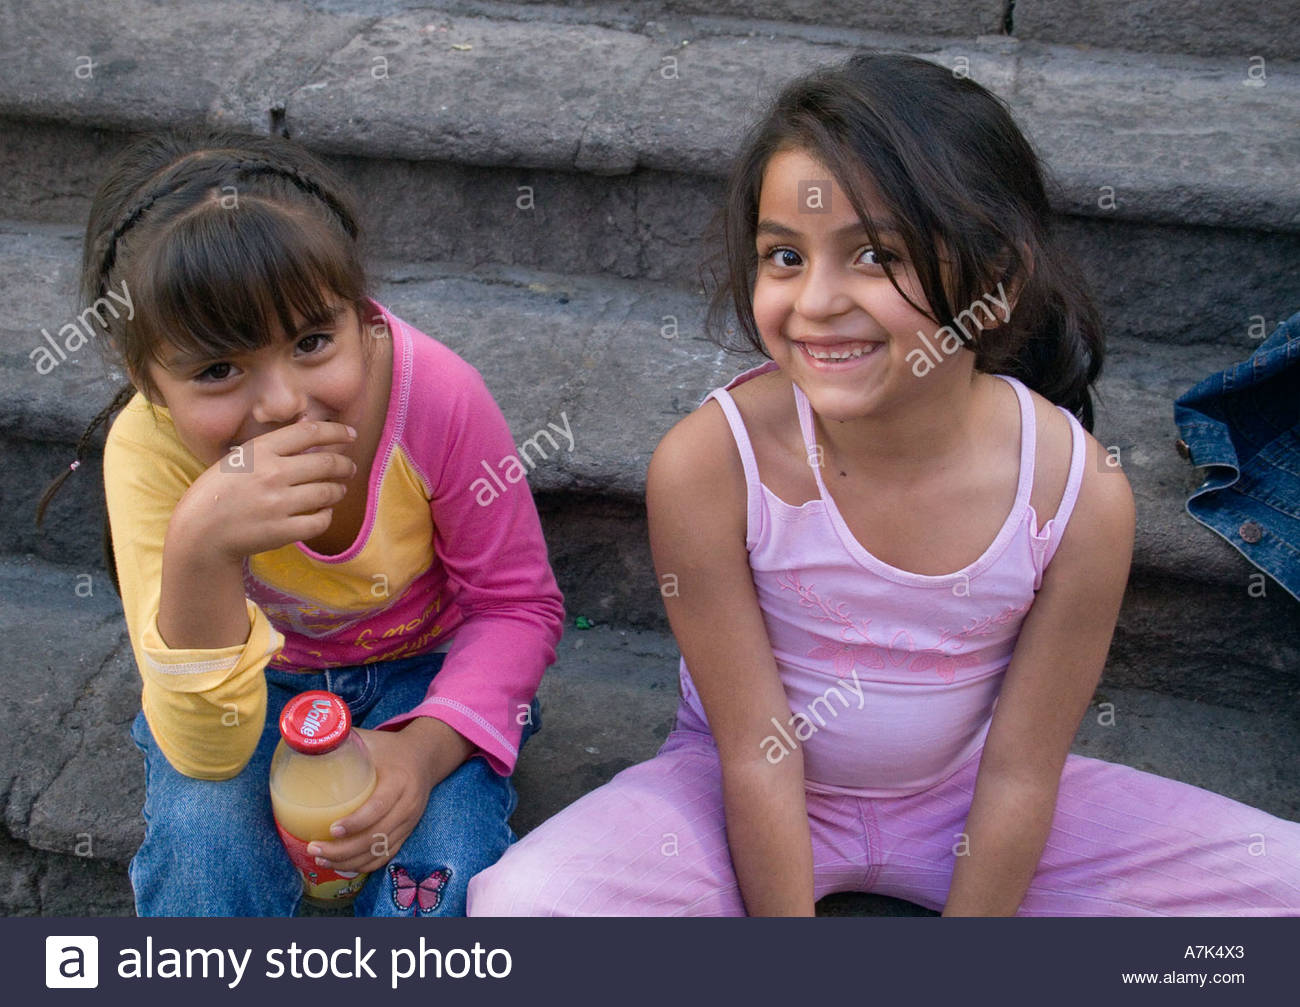 Mexico girls facial pic